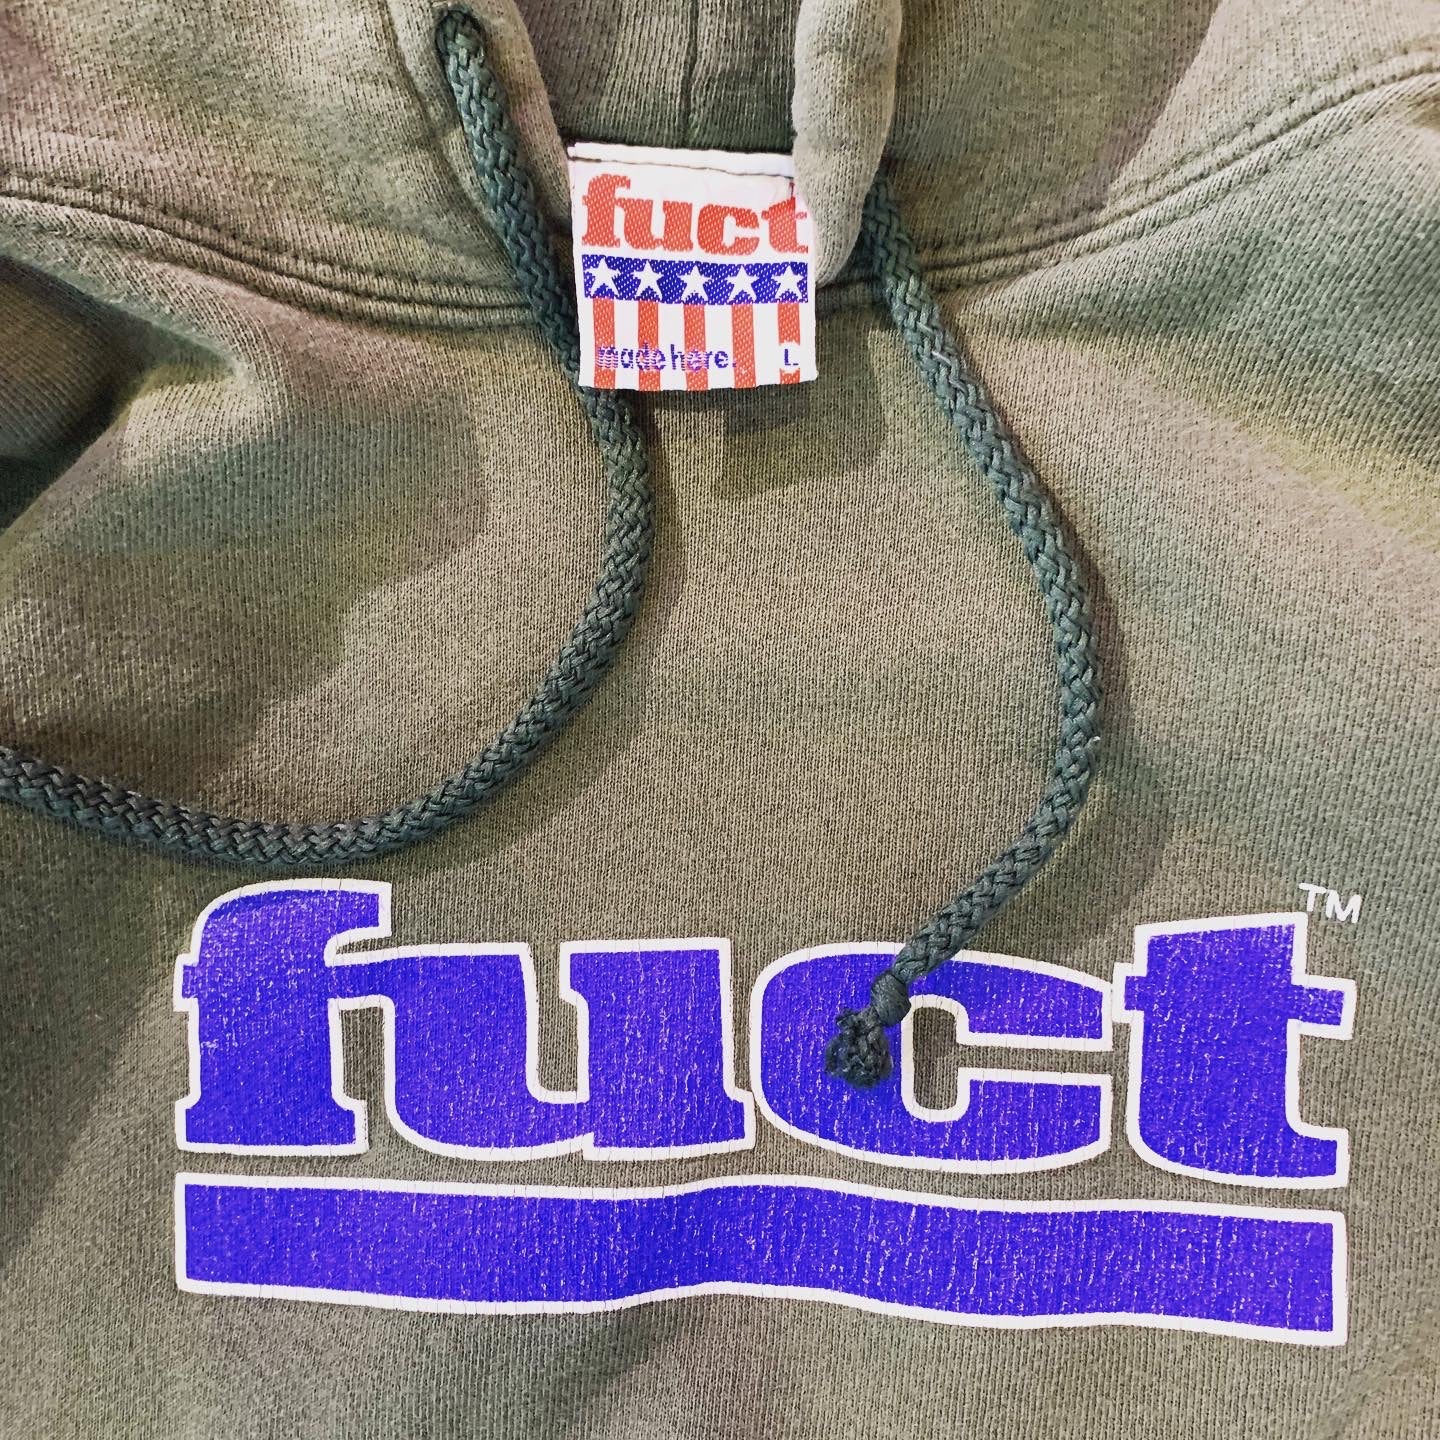 Fuct hoodie